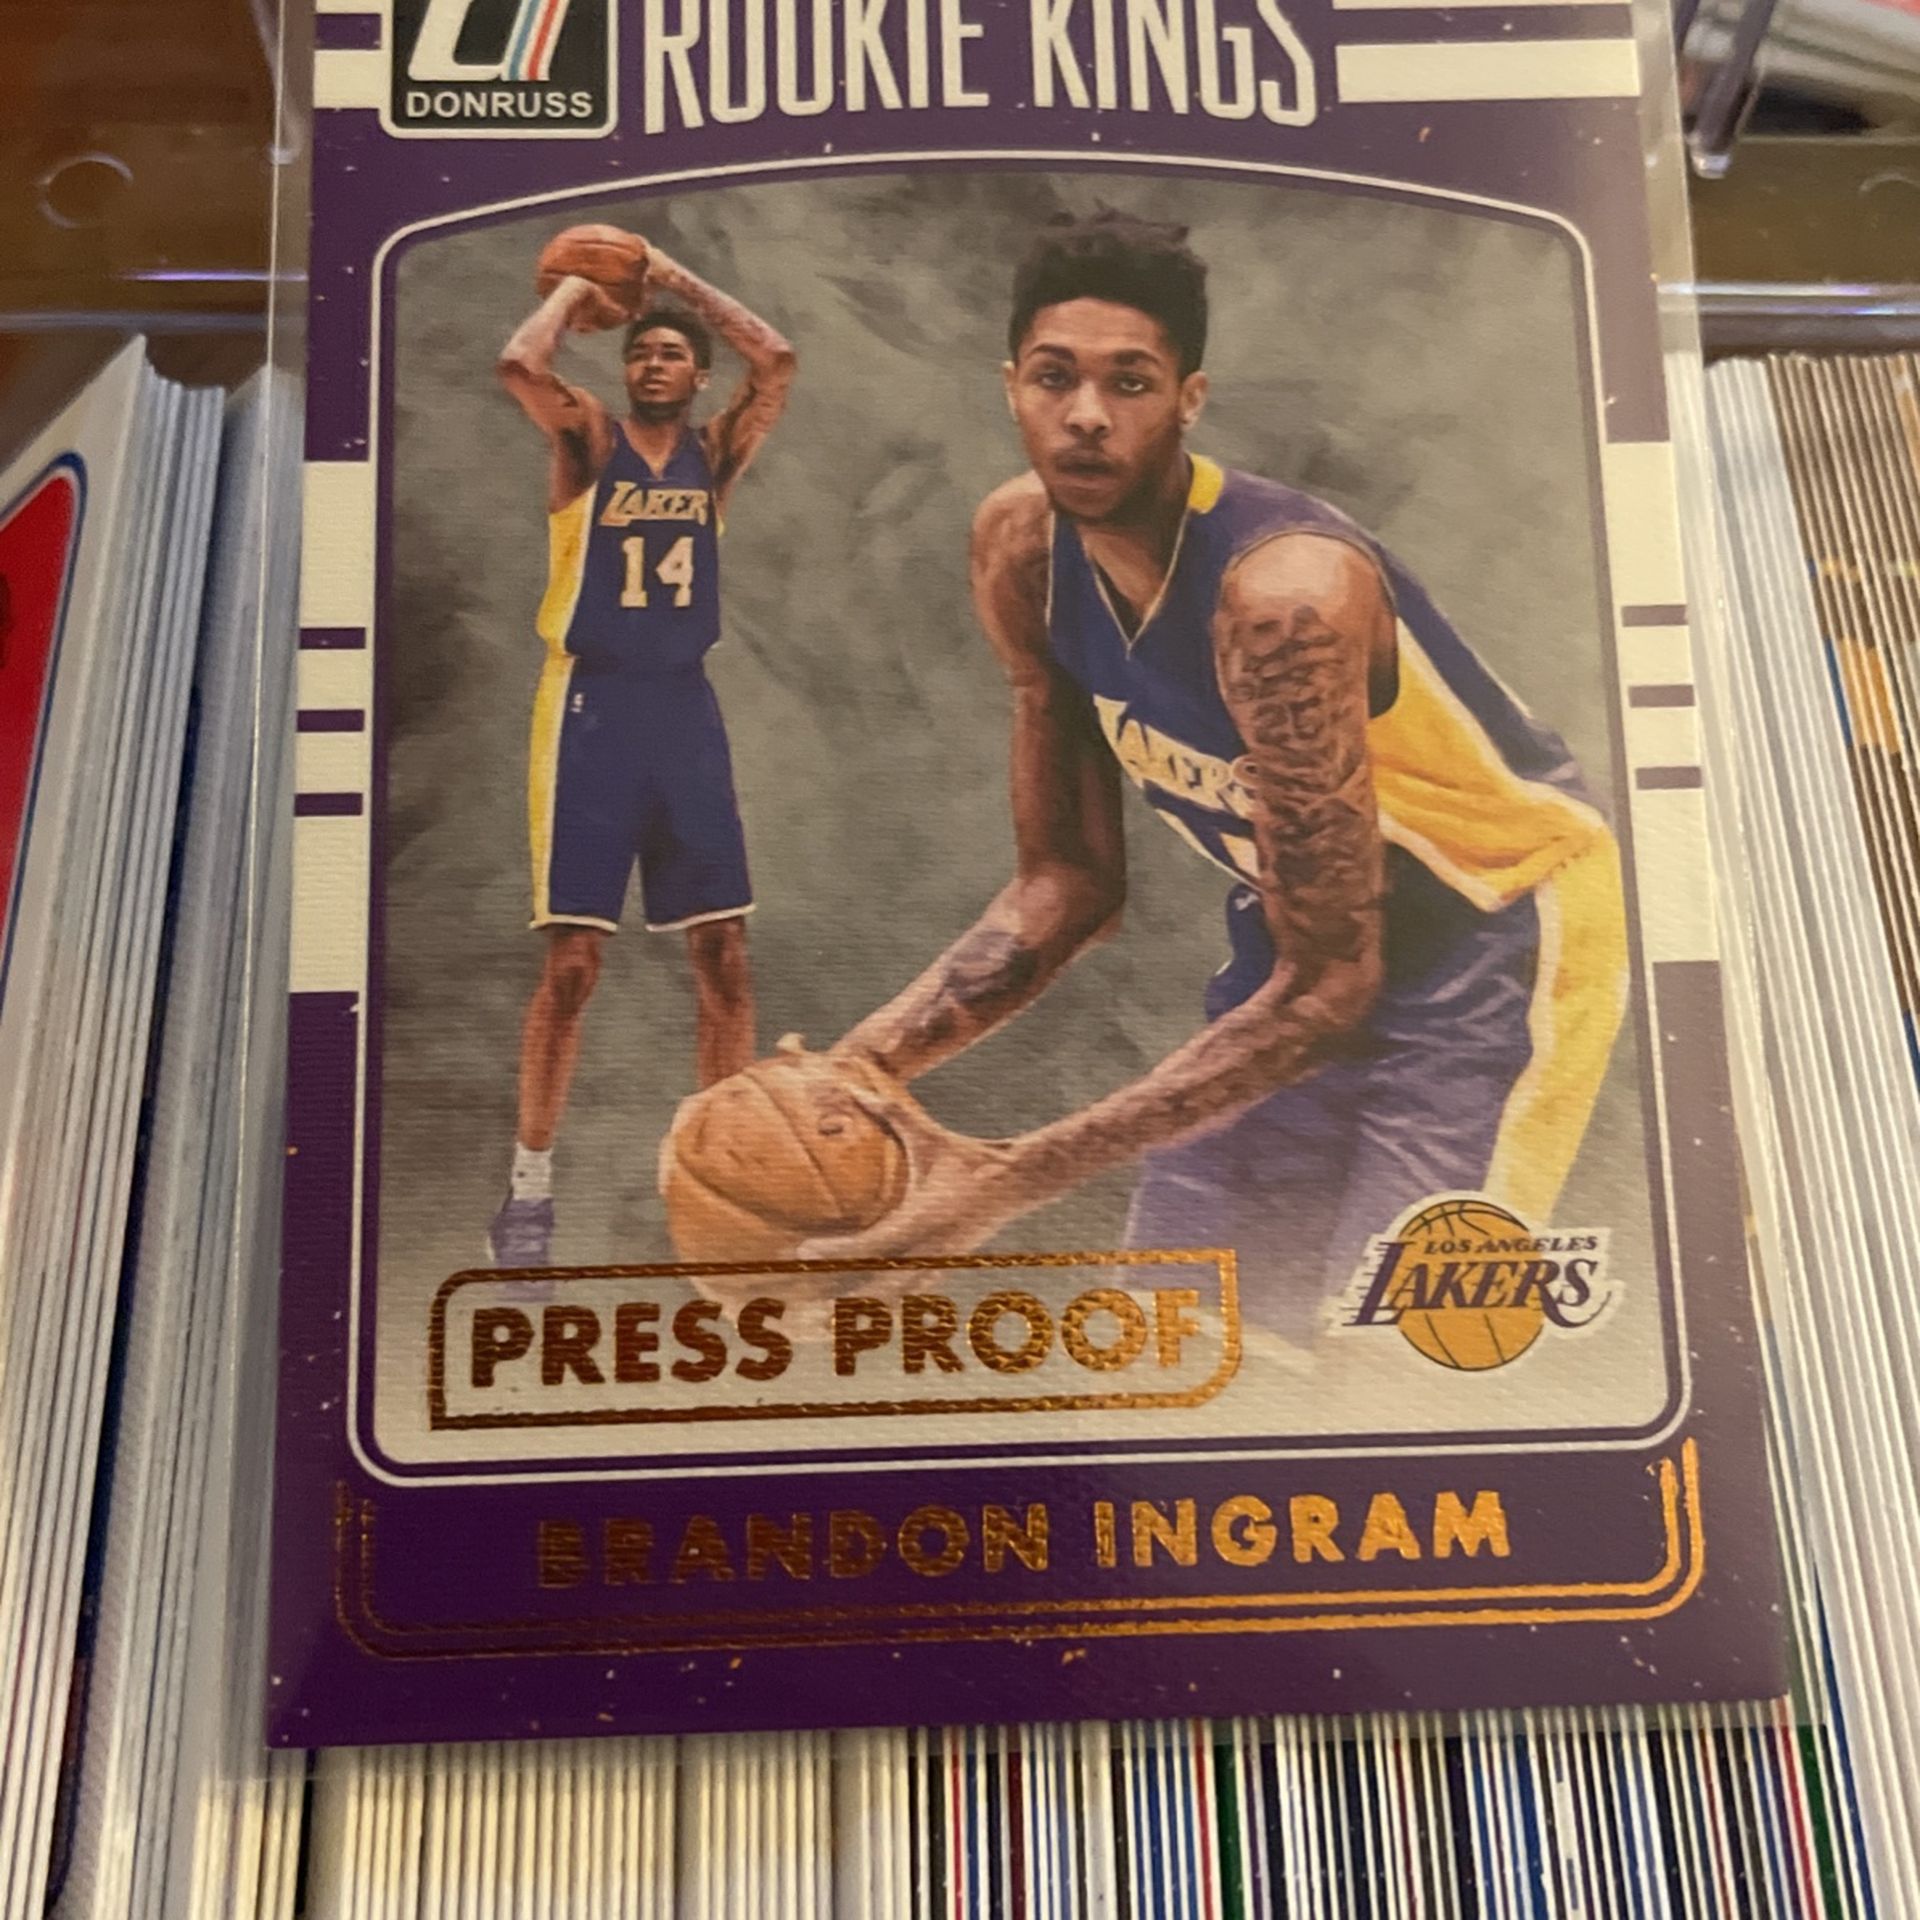 Brandon Ingram Rookie Kings Basketball Card 001